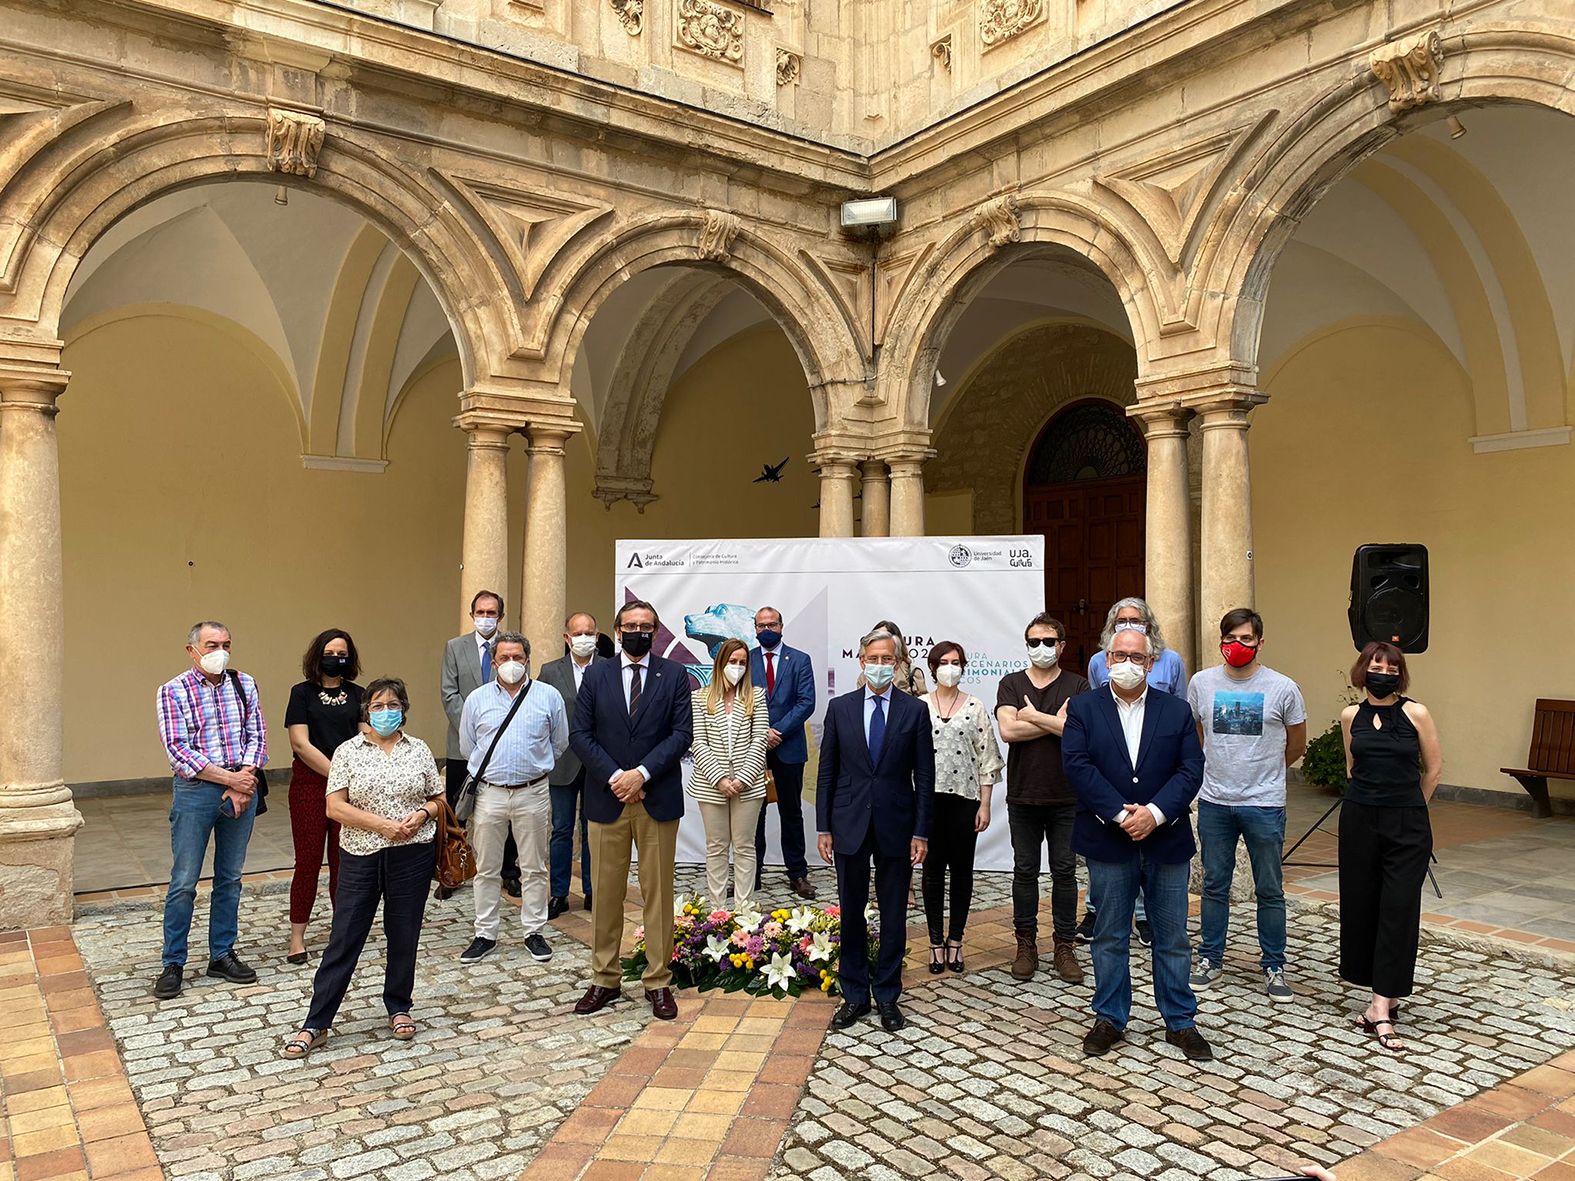 La segunda edición de ’Culturamanía’ volverá a traer espectáculos a diferentes escenarios patrimoniales únicos de la provincia de Jaén